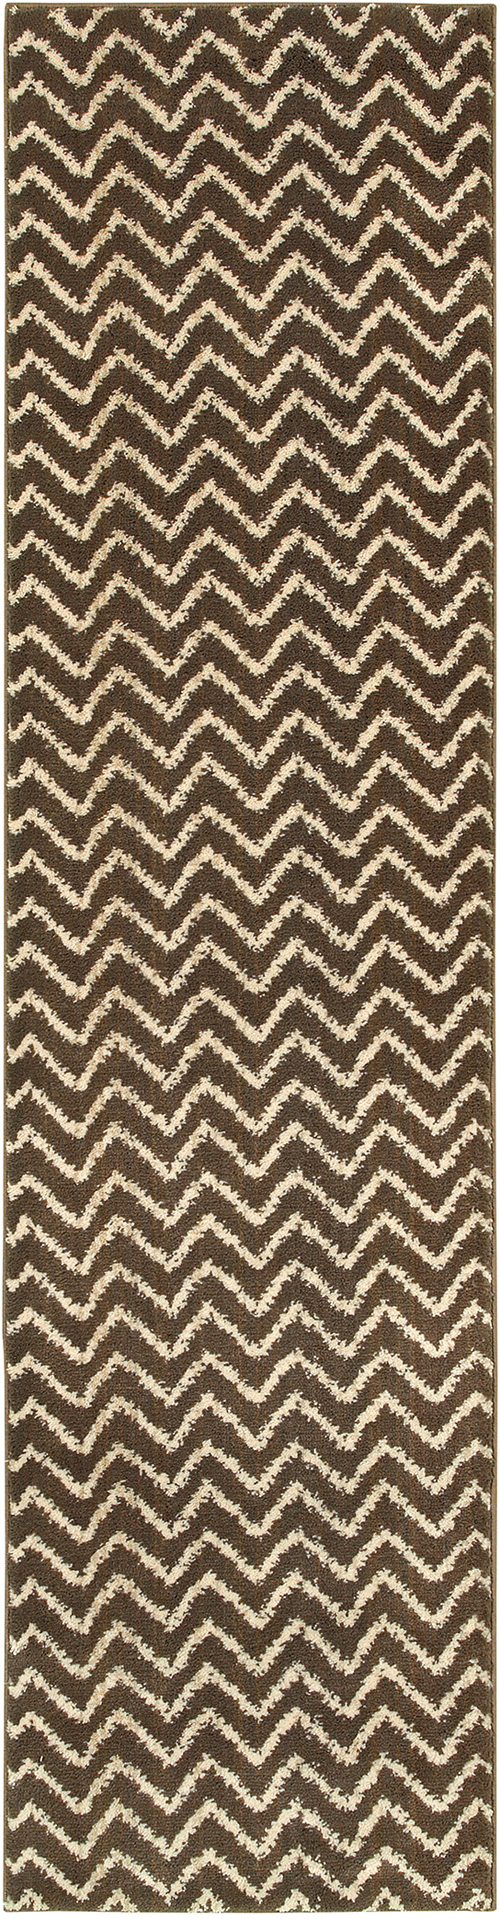 oriental weavers marrakesh 5993d brown